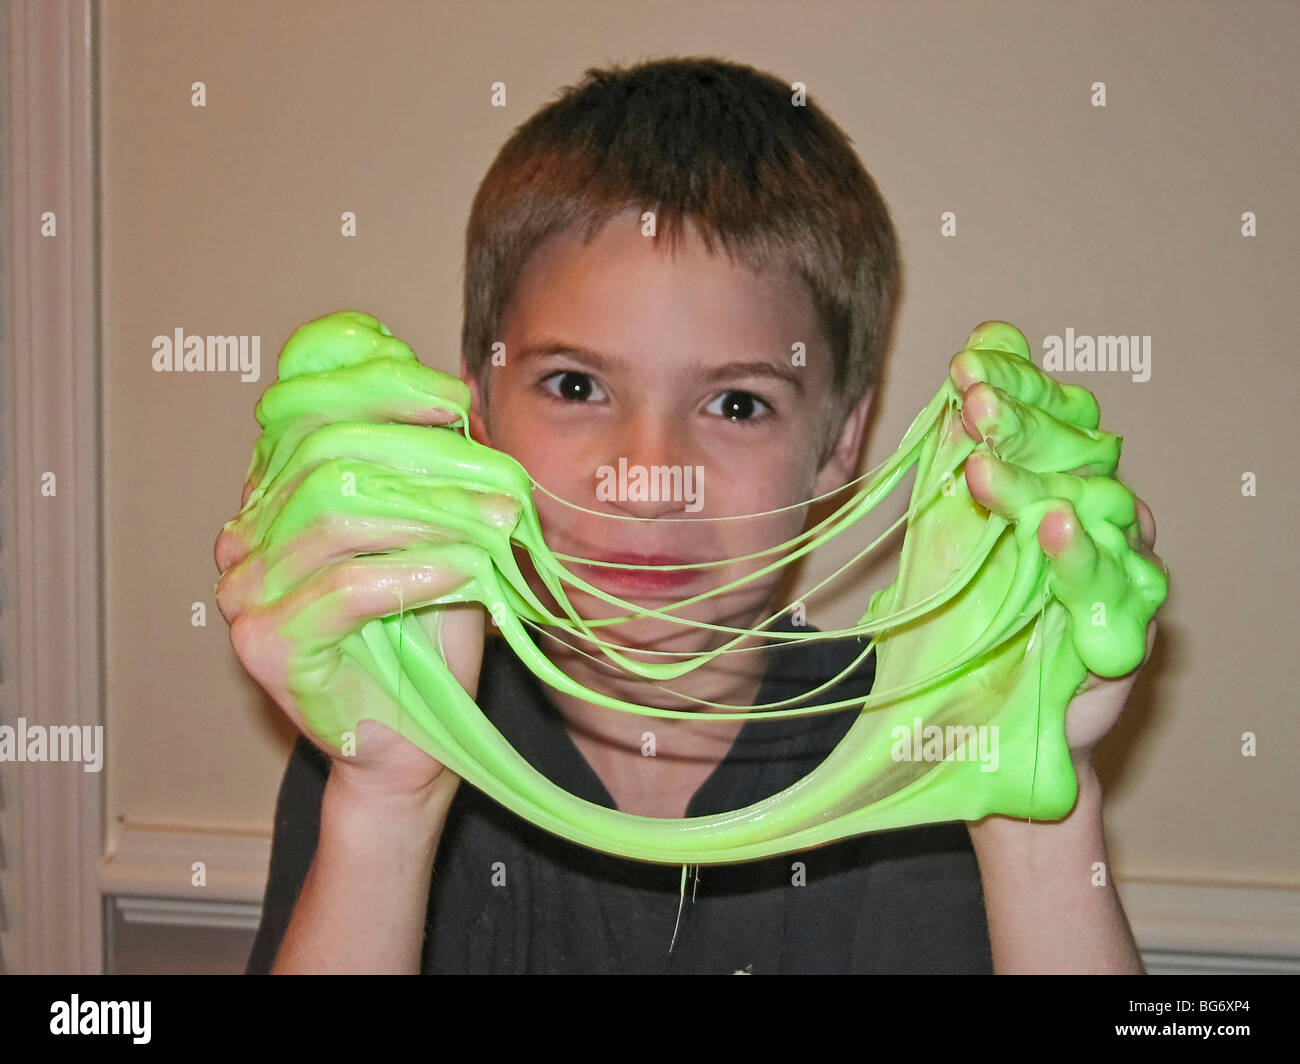 Jeune garçon, 11 ans, joue avec un silmy jouet pour enfants Photo